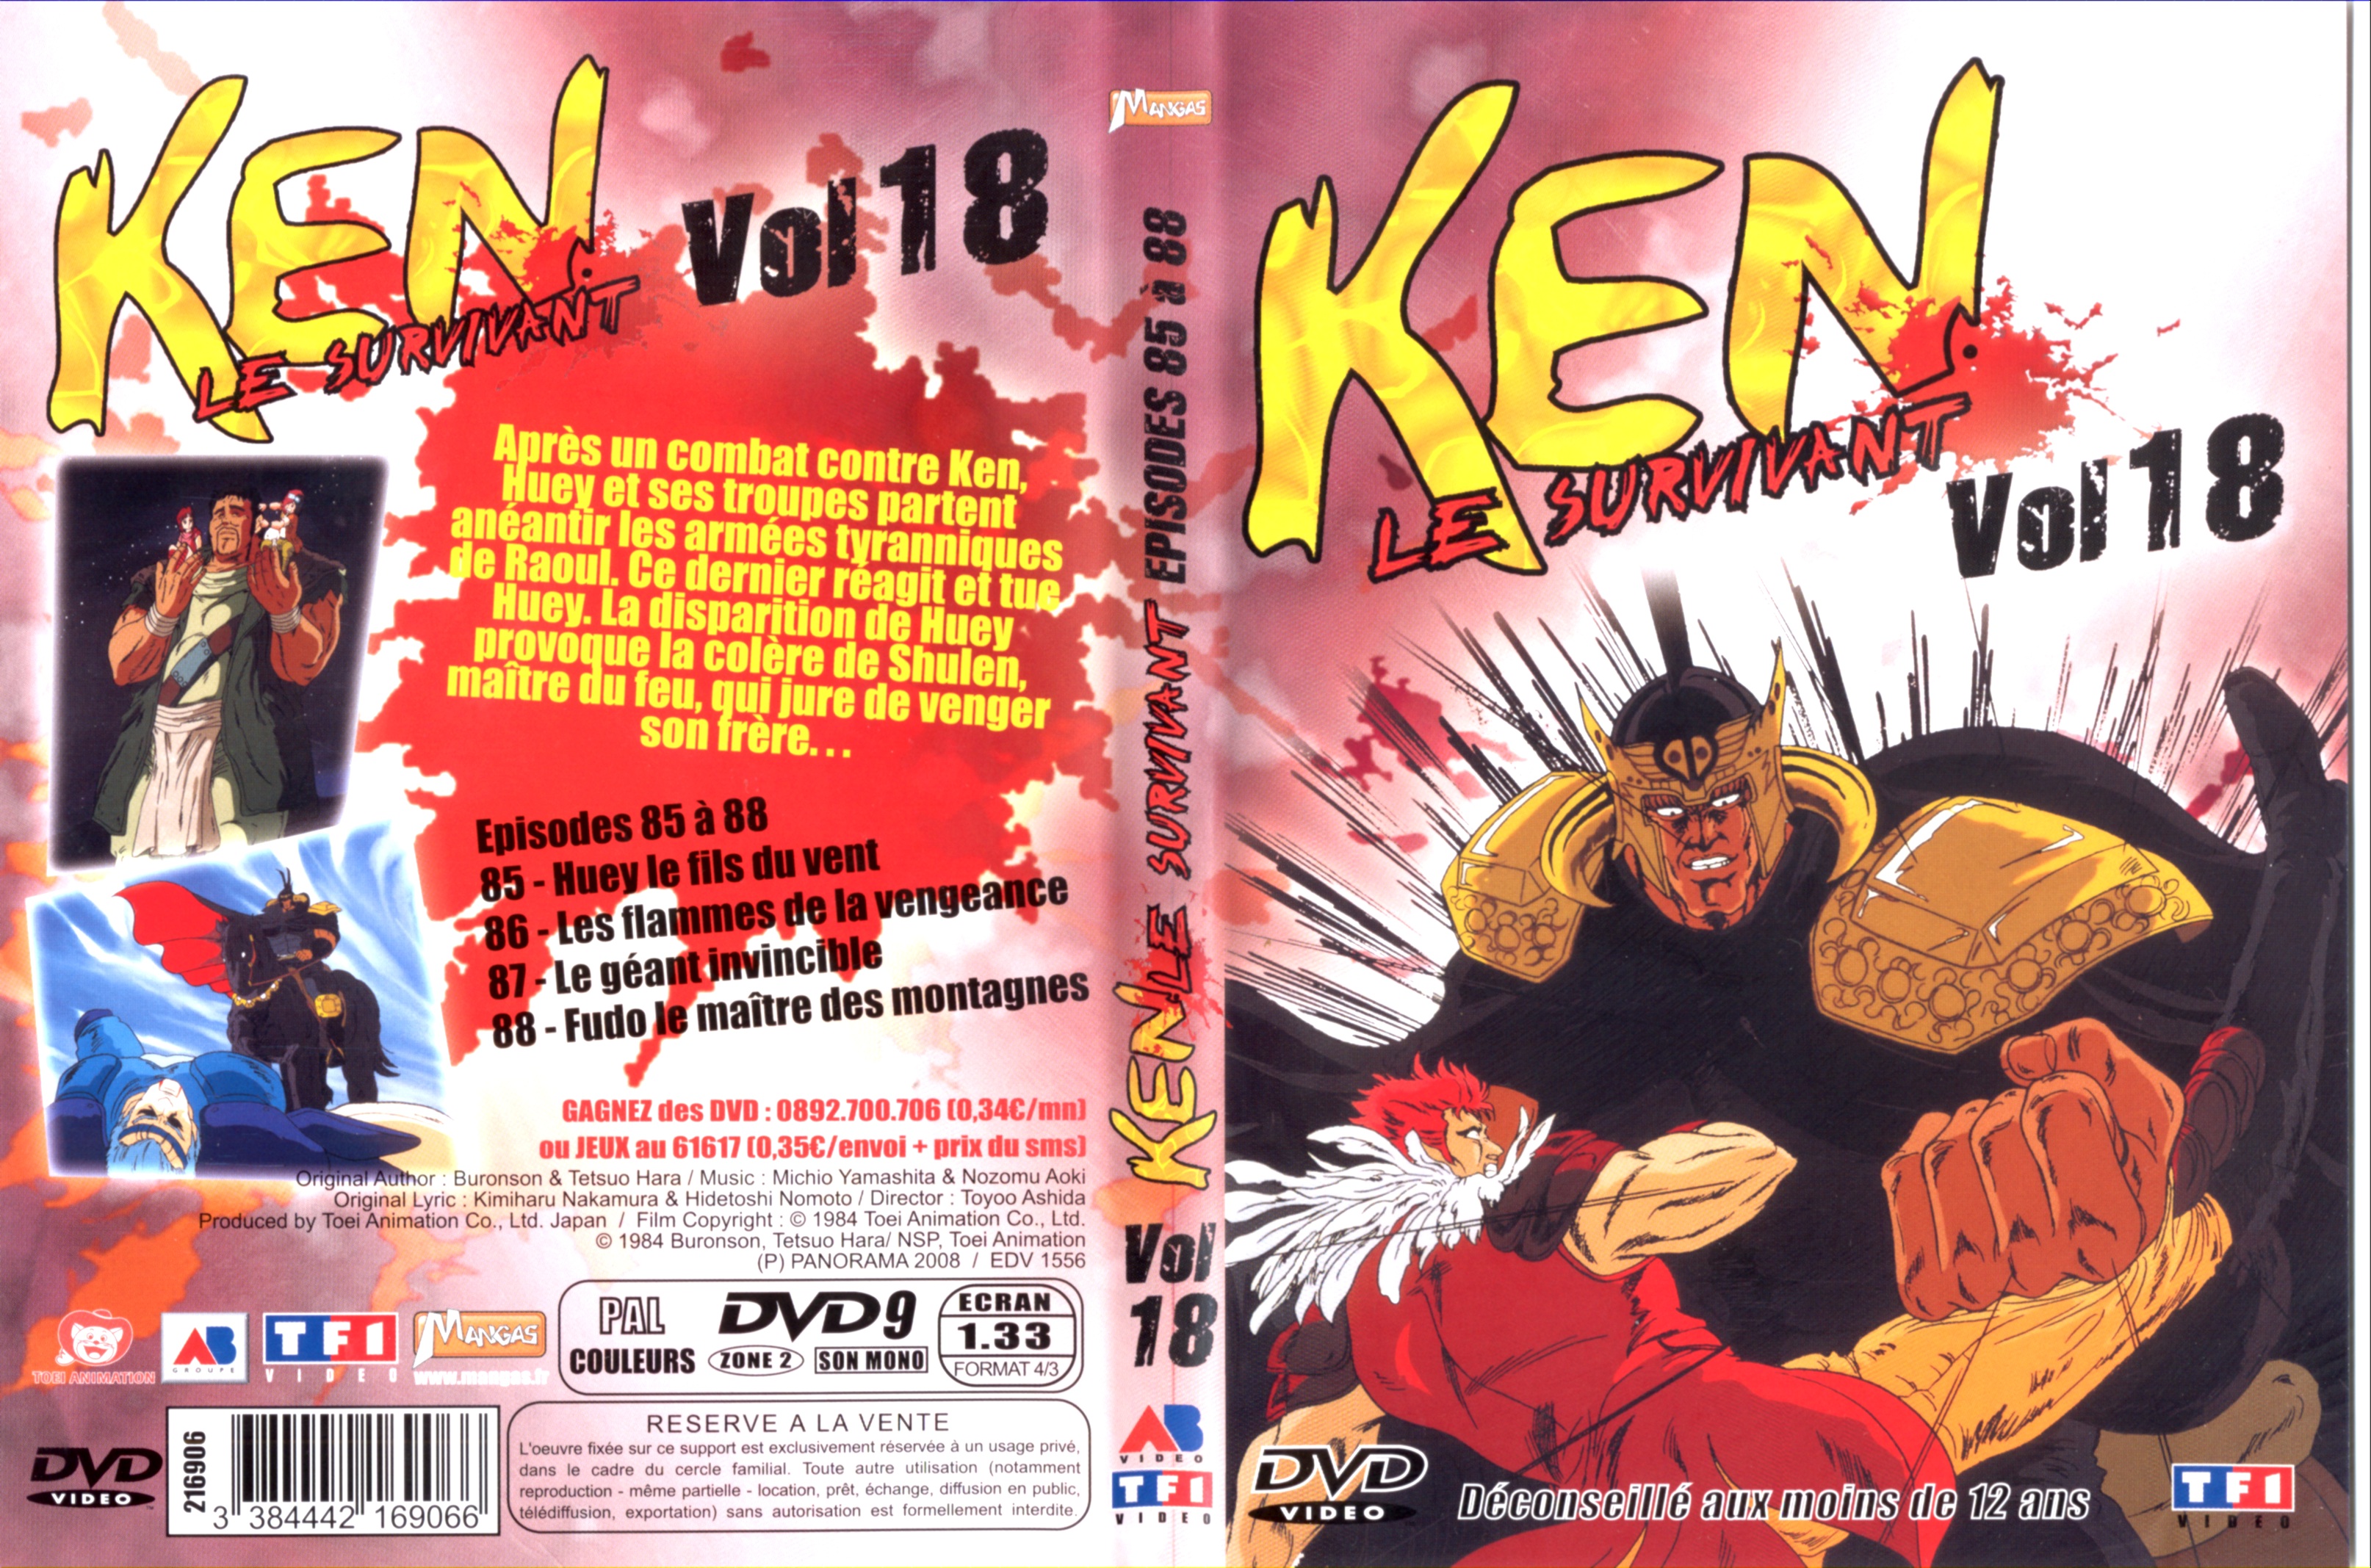 Jaquette DVD Ken le survivant vol 18